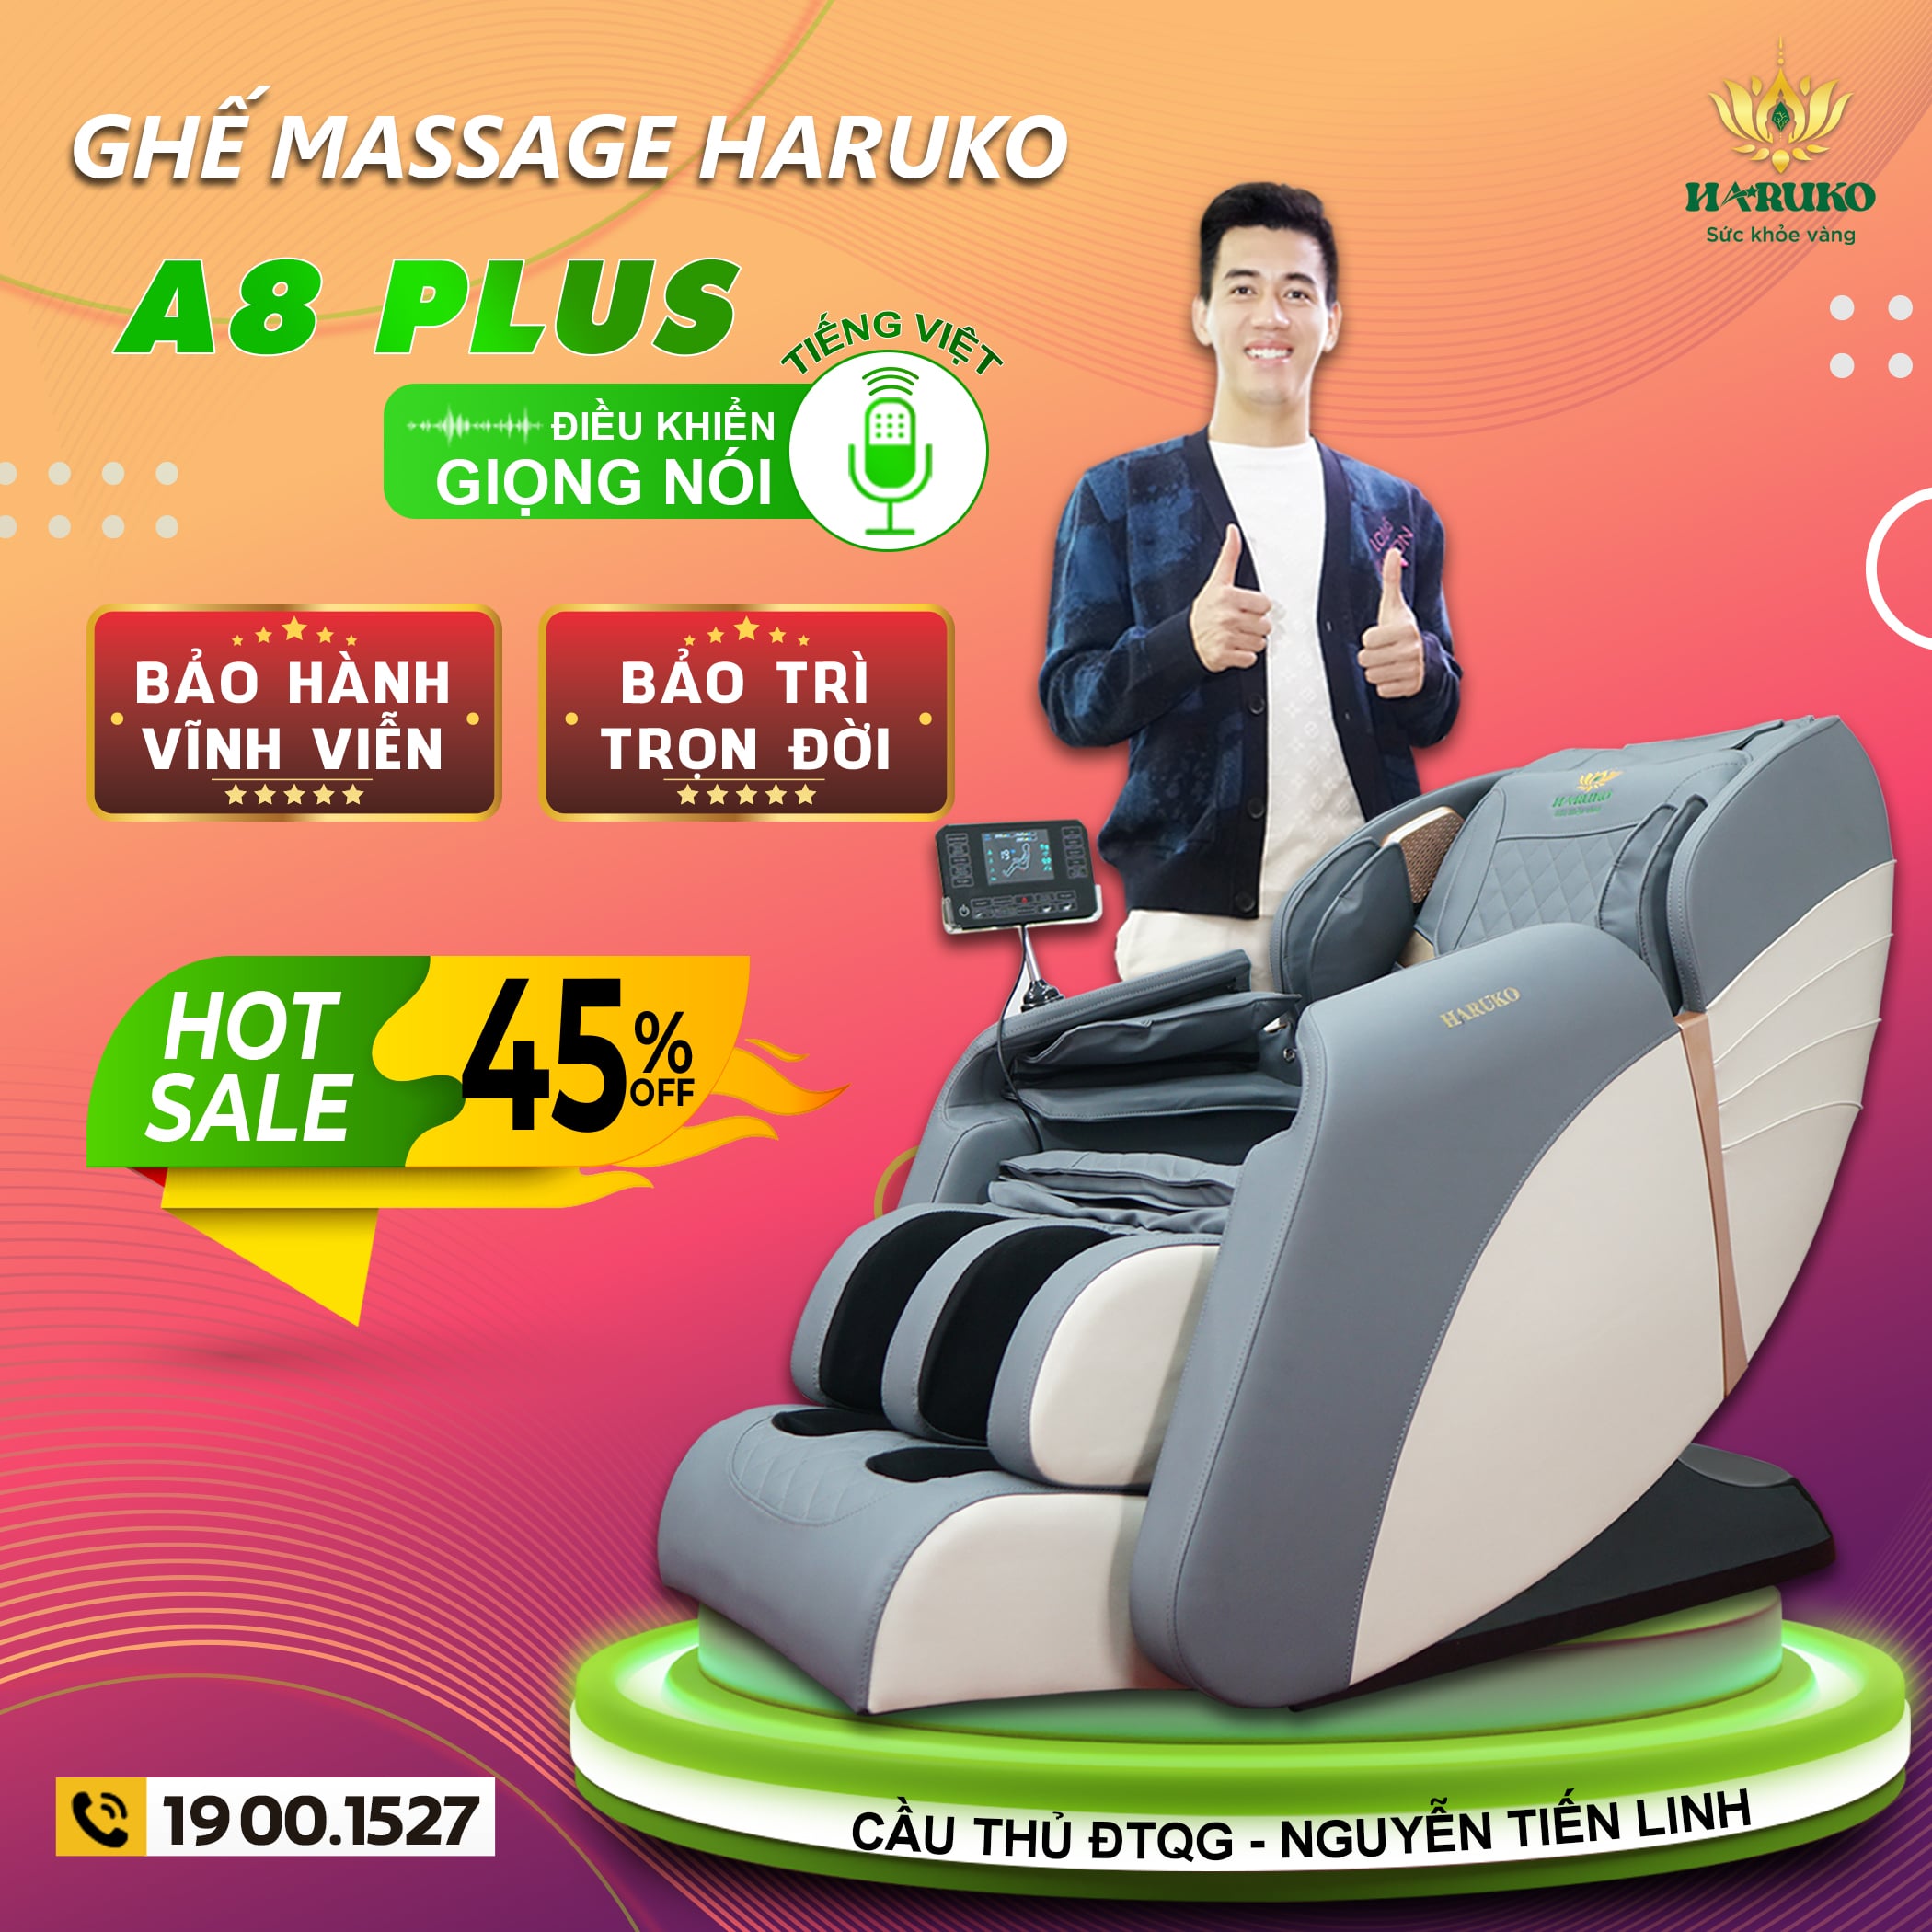 Những hãng ghế massage được người nổi tiếng tin dùng như Haruko là lựa chọn tuyệt vời cho bạn